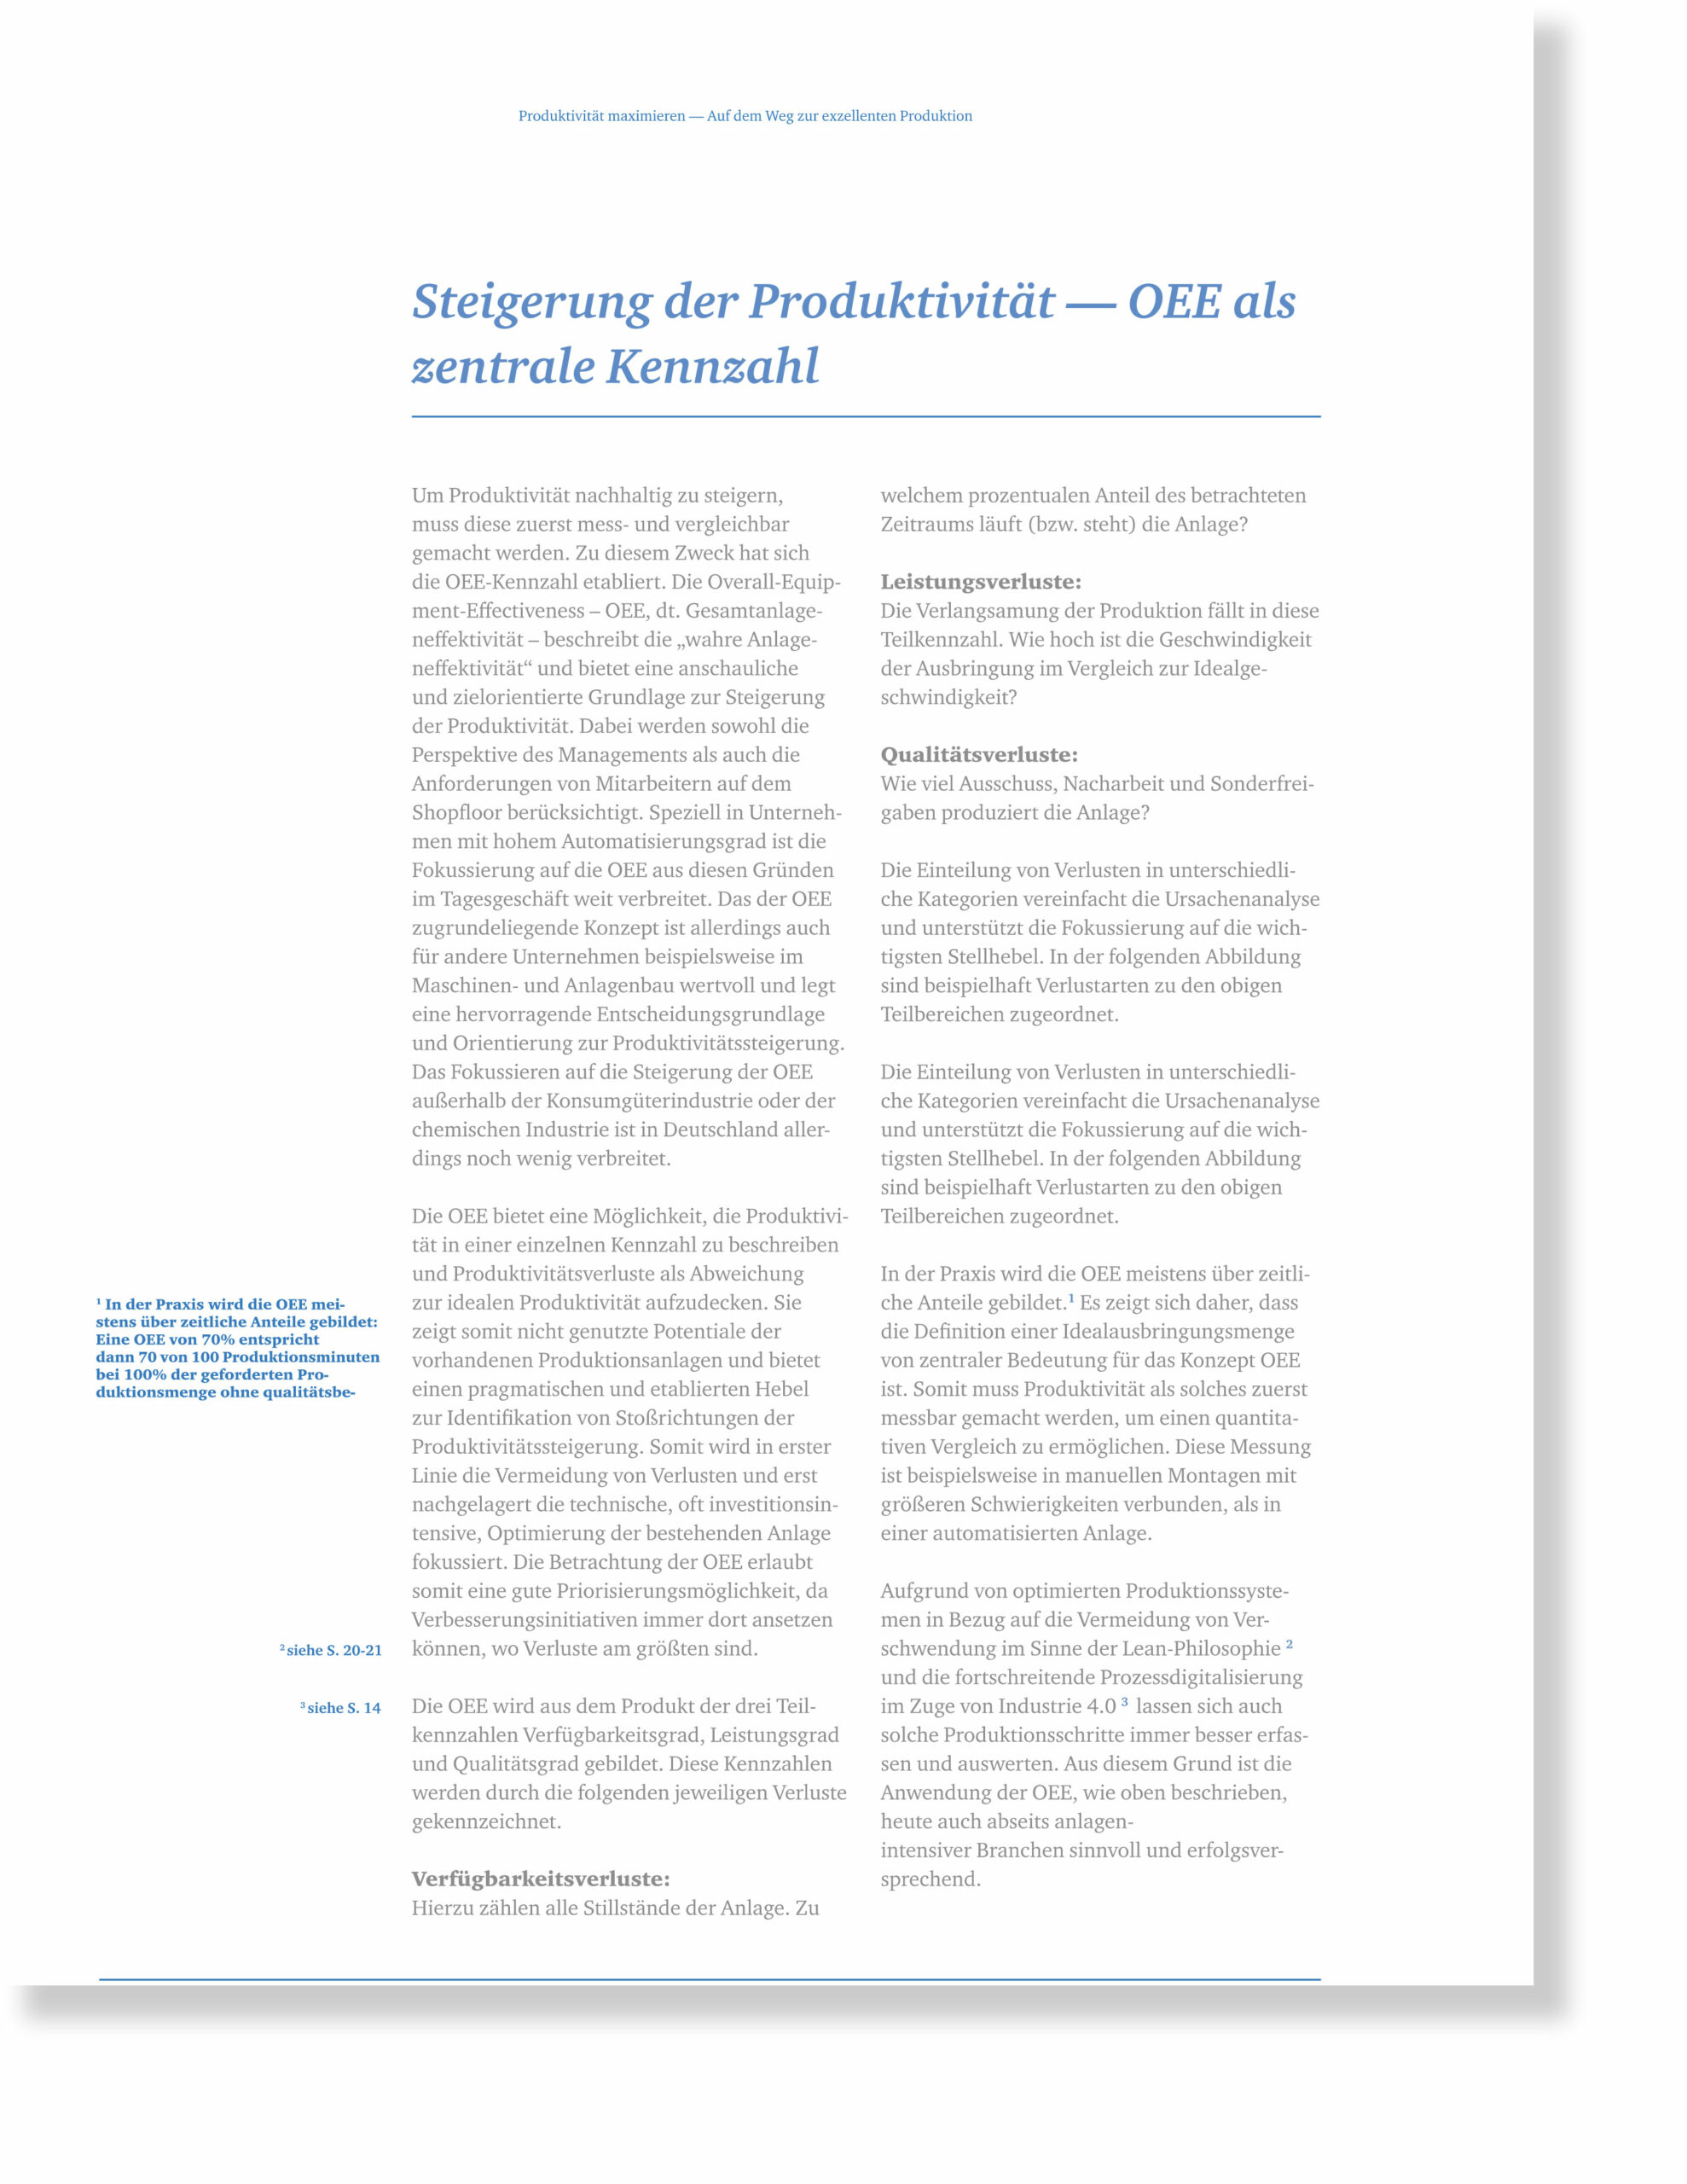 Whitepaper_Produktivität-Maximieren_HQ_p08-scaled Studien 